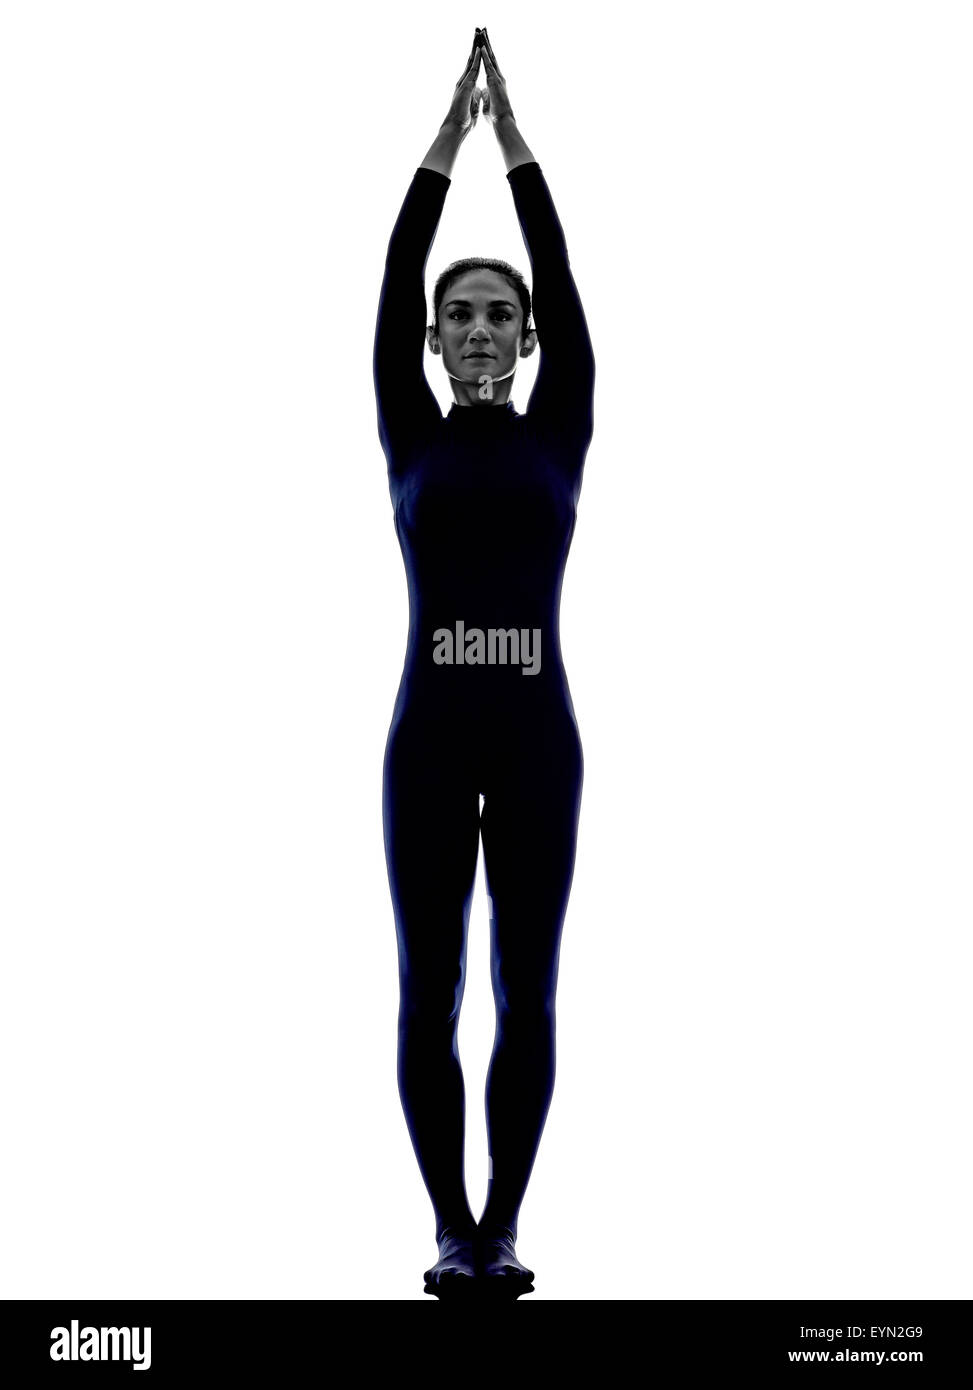 Chinese woman on a yoga mat doing the upward salute pose Stock Photo  Alamy